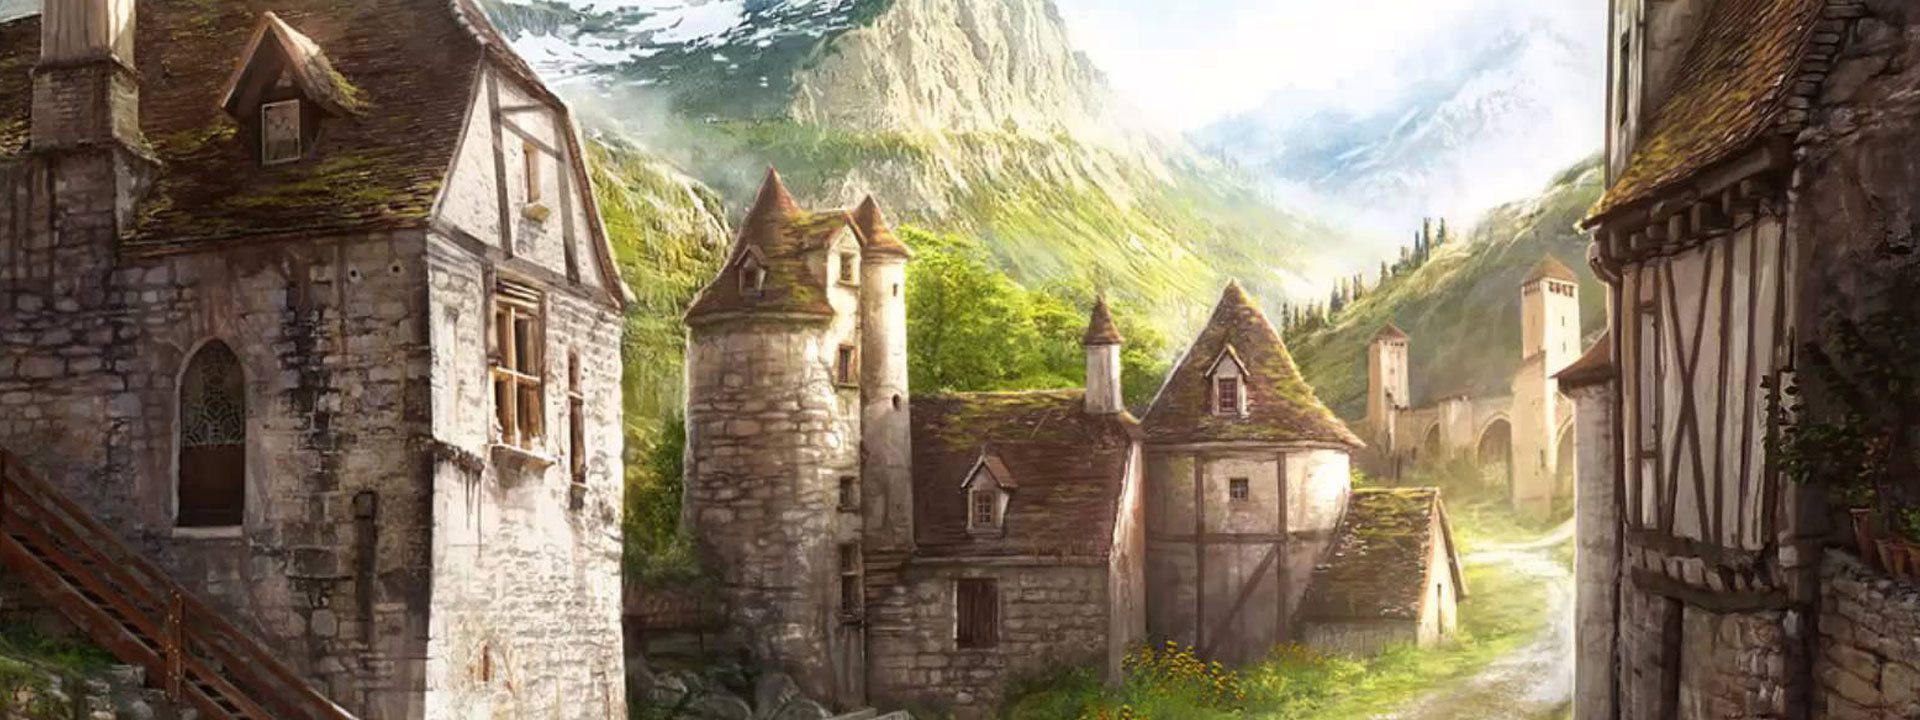 Dentro da vila medieval Phandalin - Imagem do Tarrasque na Bota 03 - A mina perdida de Phandelver - Episódio 3 - O desaparecimento do amigo anão